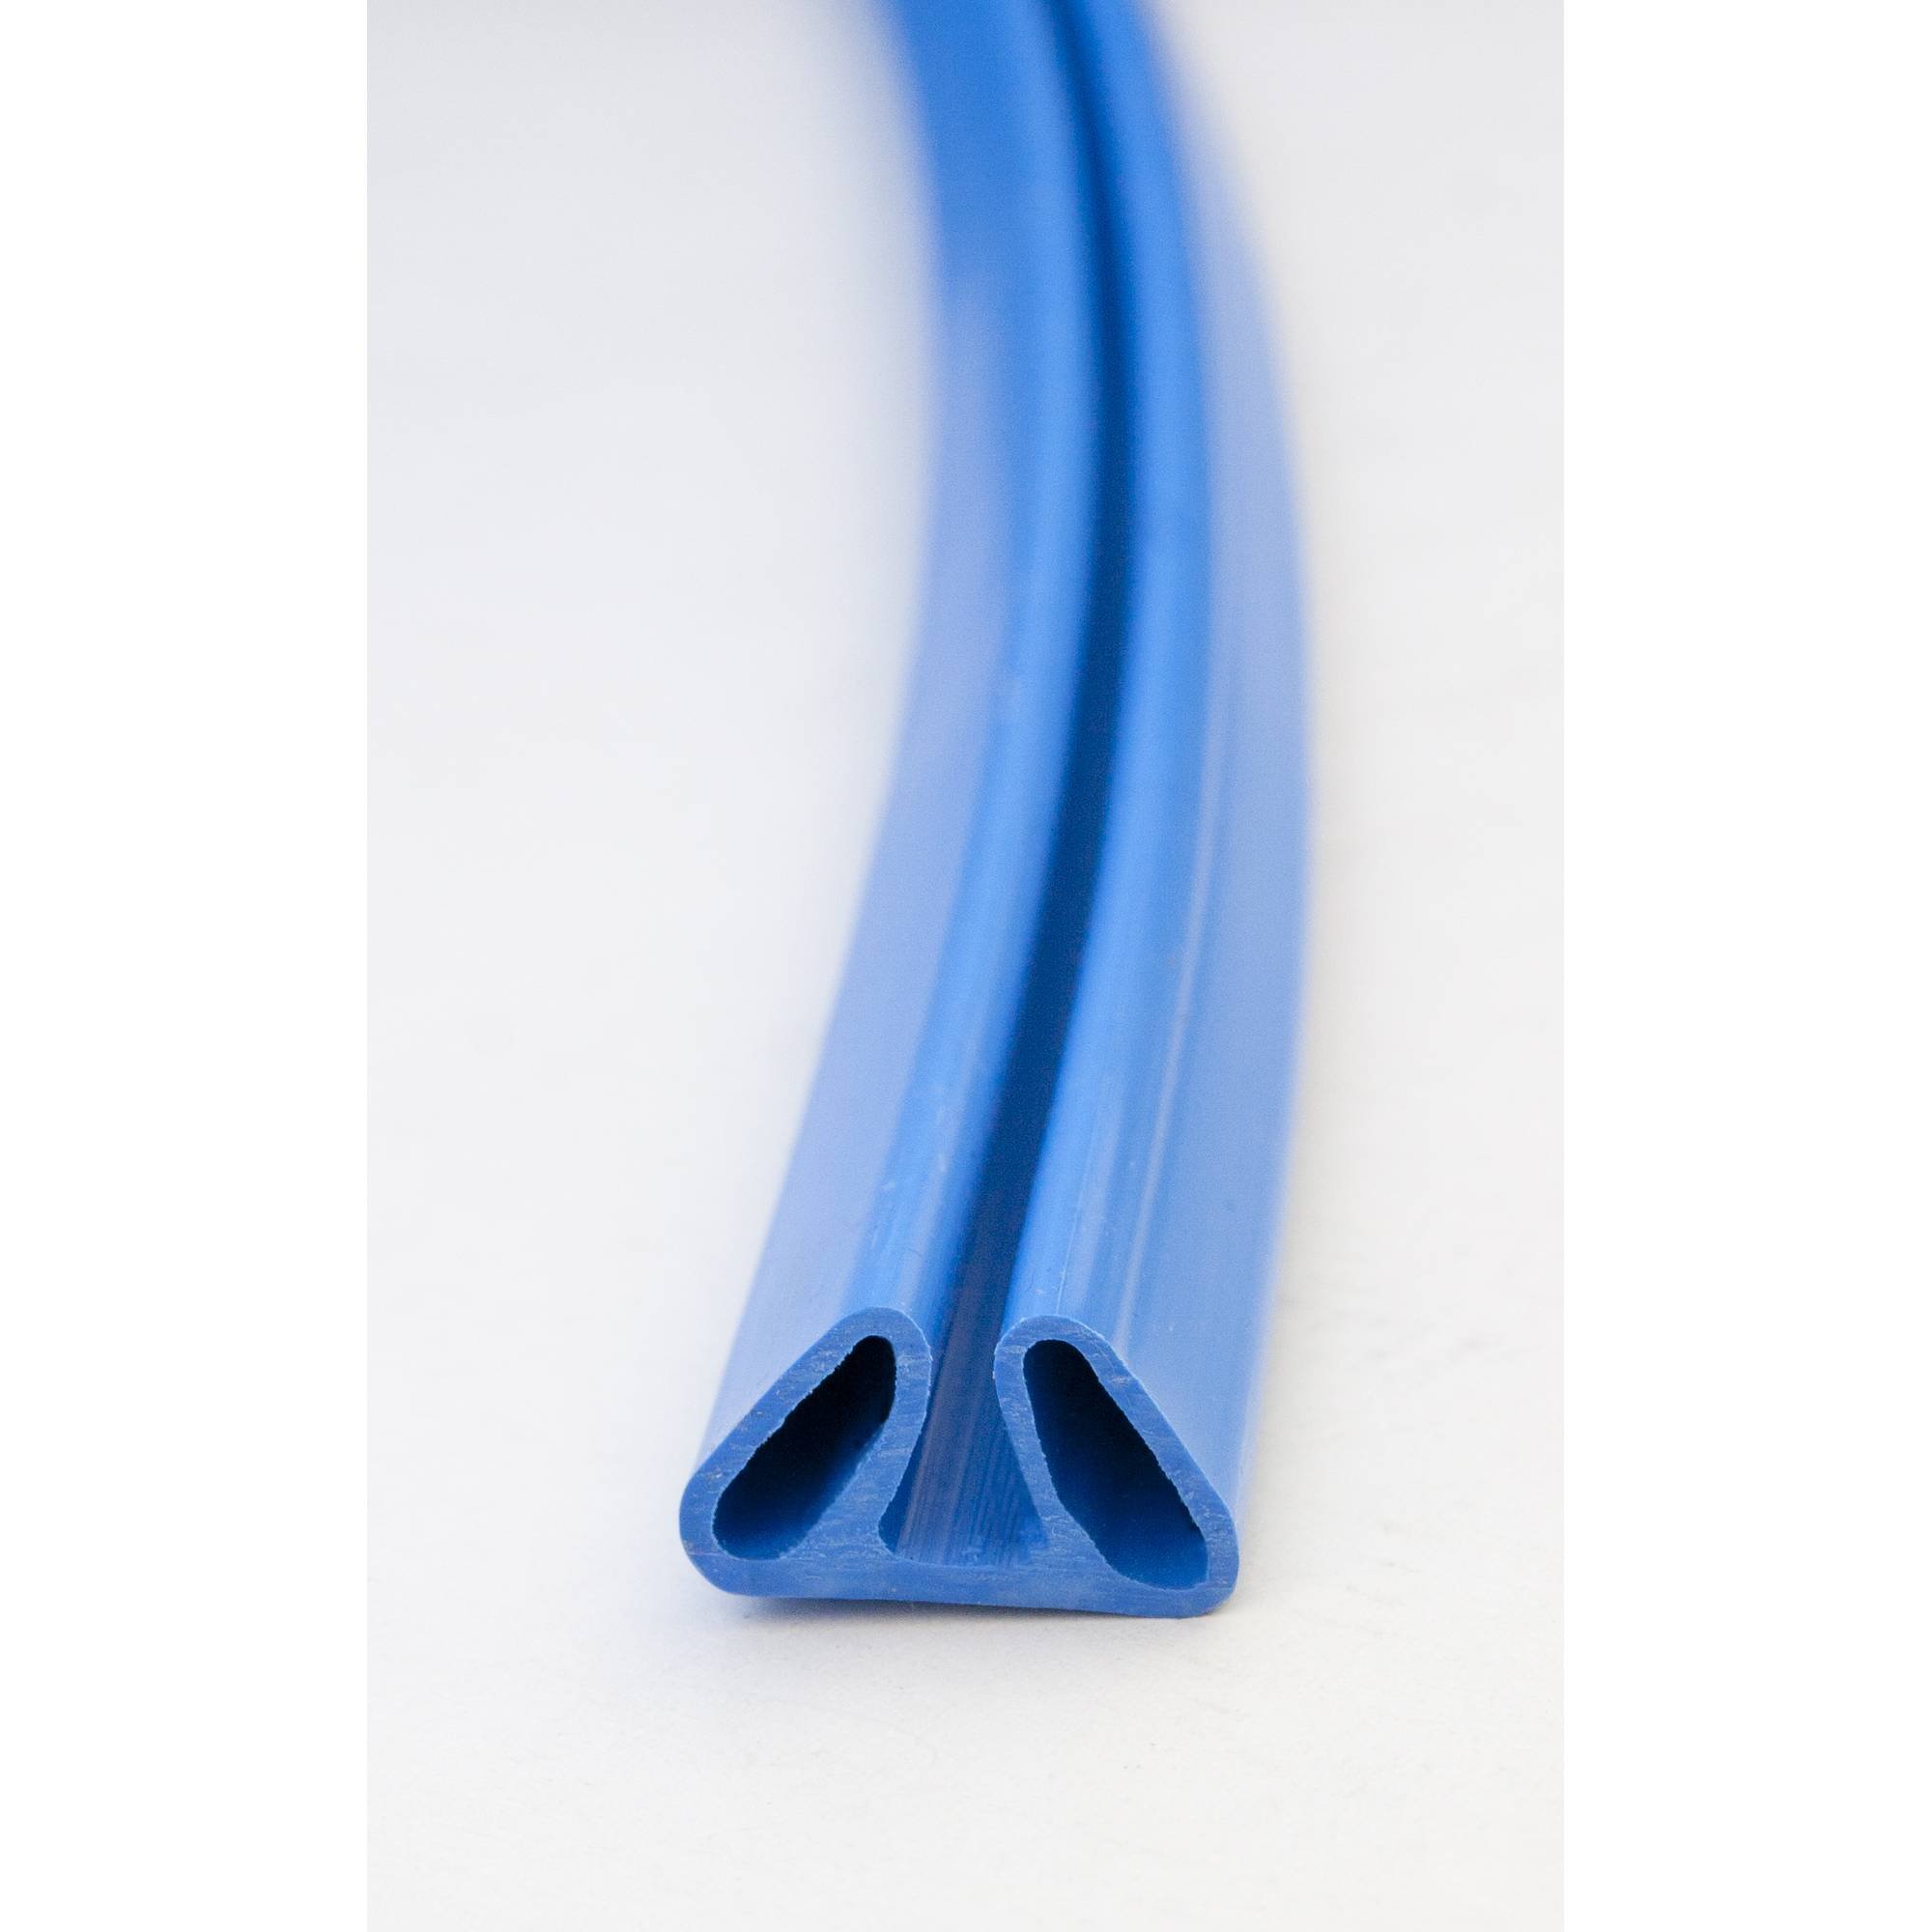 Stahlwandpool rund 300x120cm, Stahl 0,4mm weiß, Folie 0,4mm blau, Einhängebiese